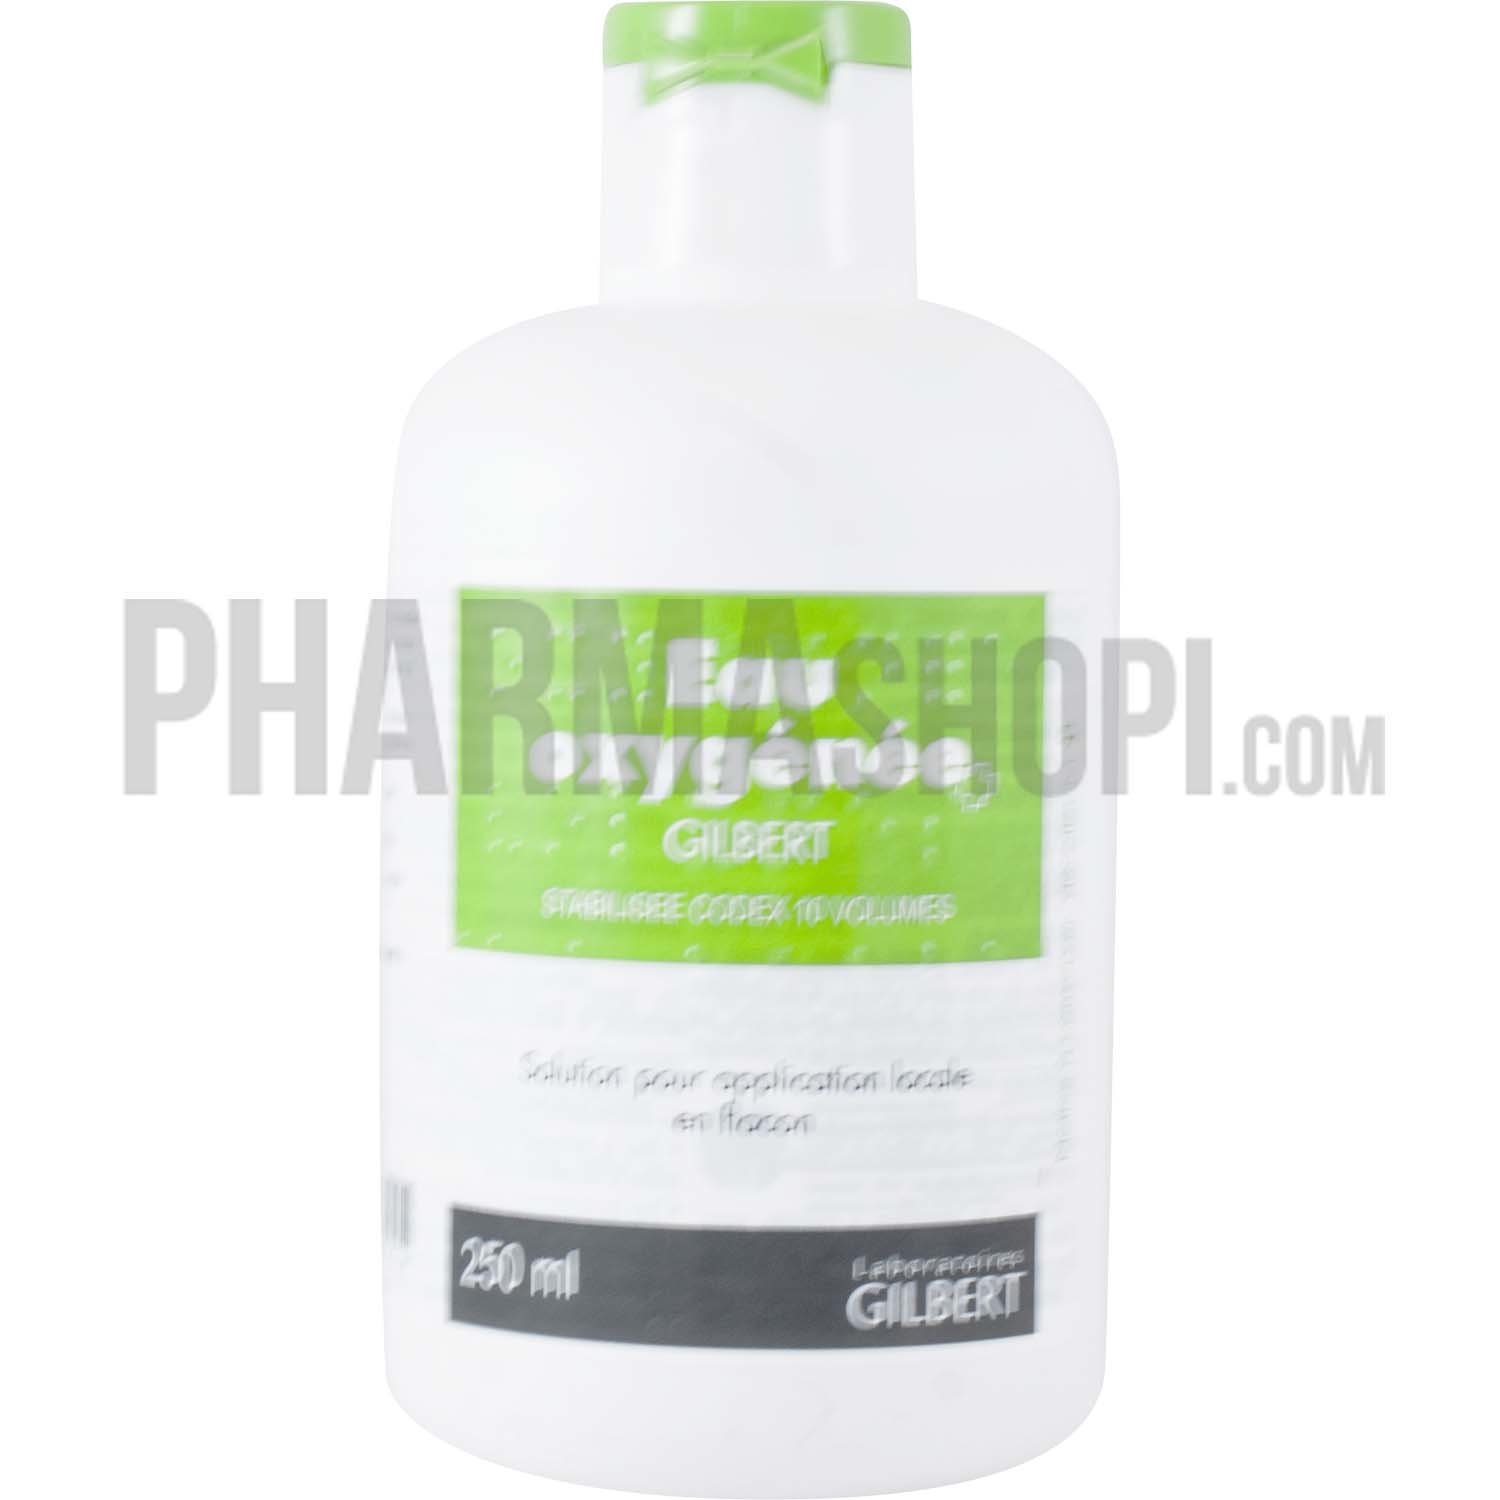 GILBERT eau oxygénée peroxyde d'hydrogène 10 vol. 120 ml